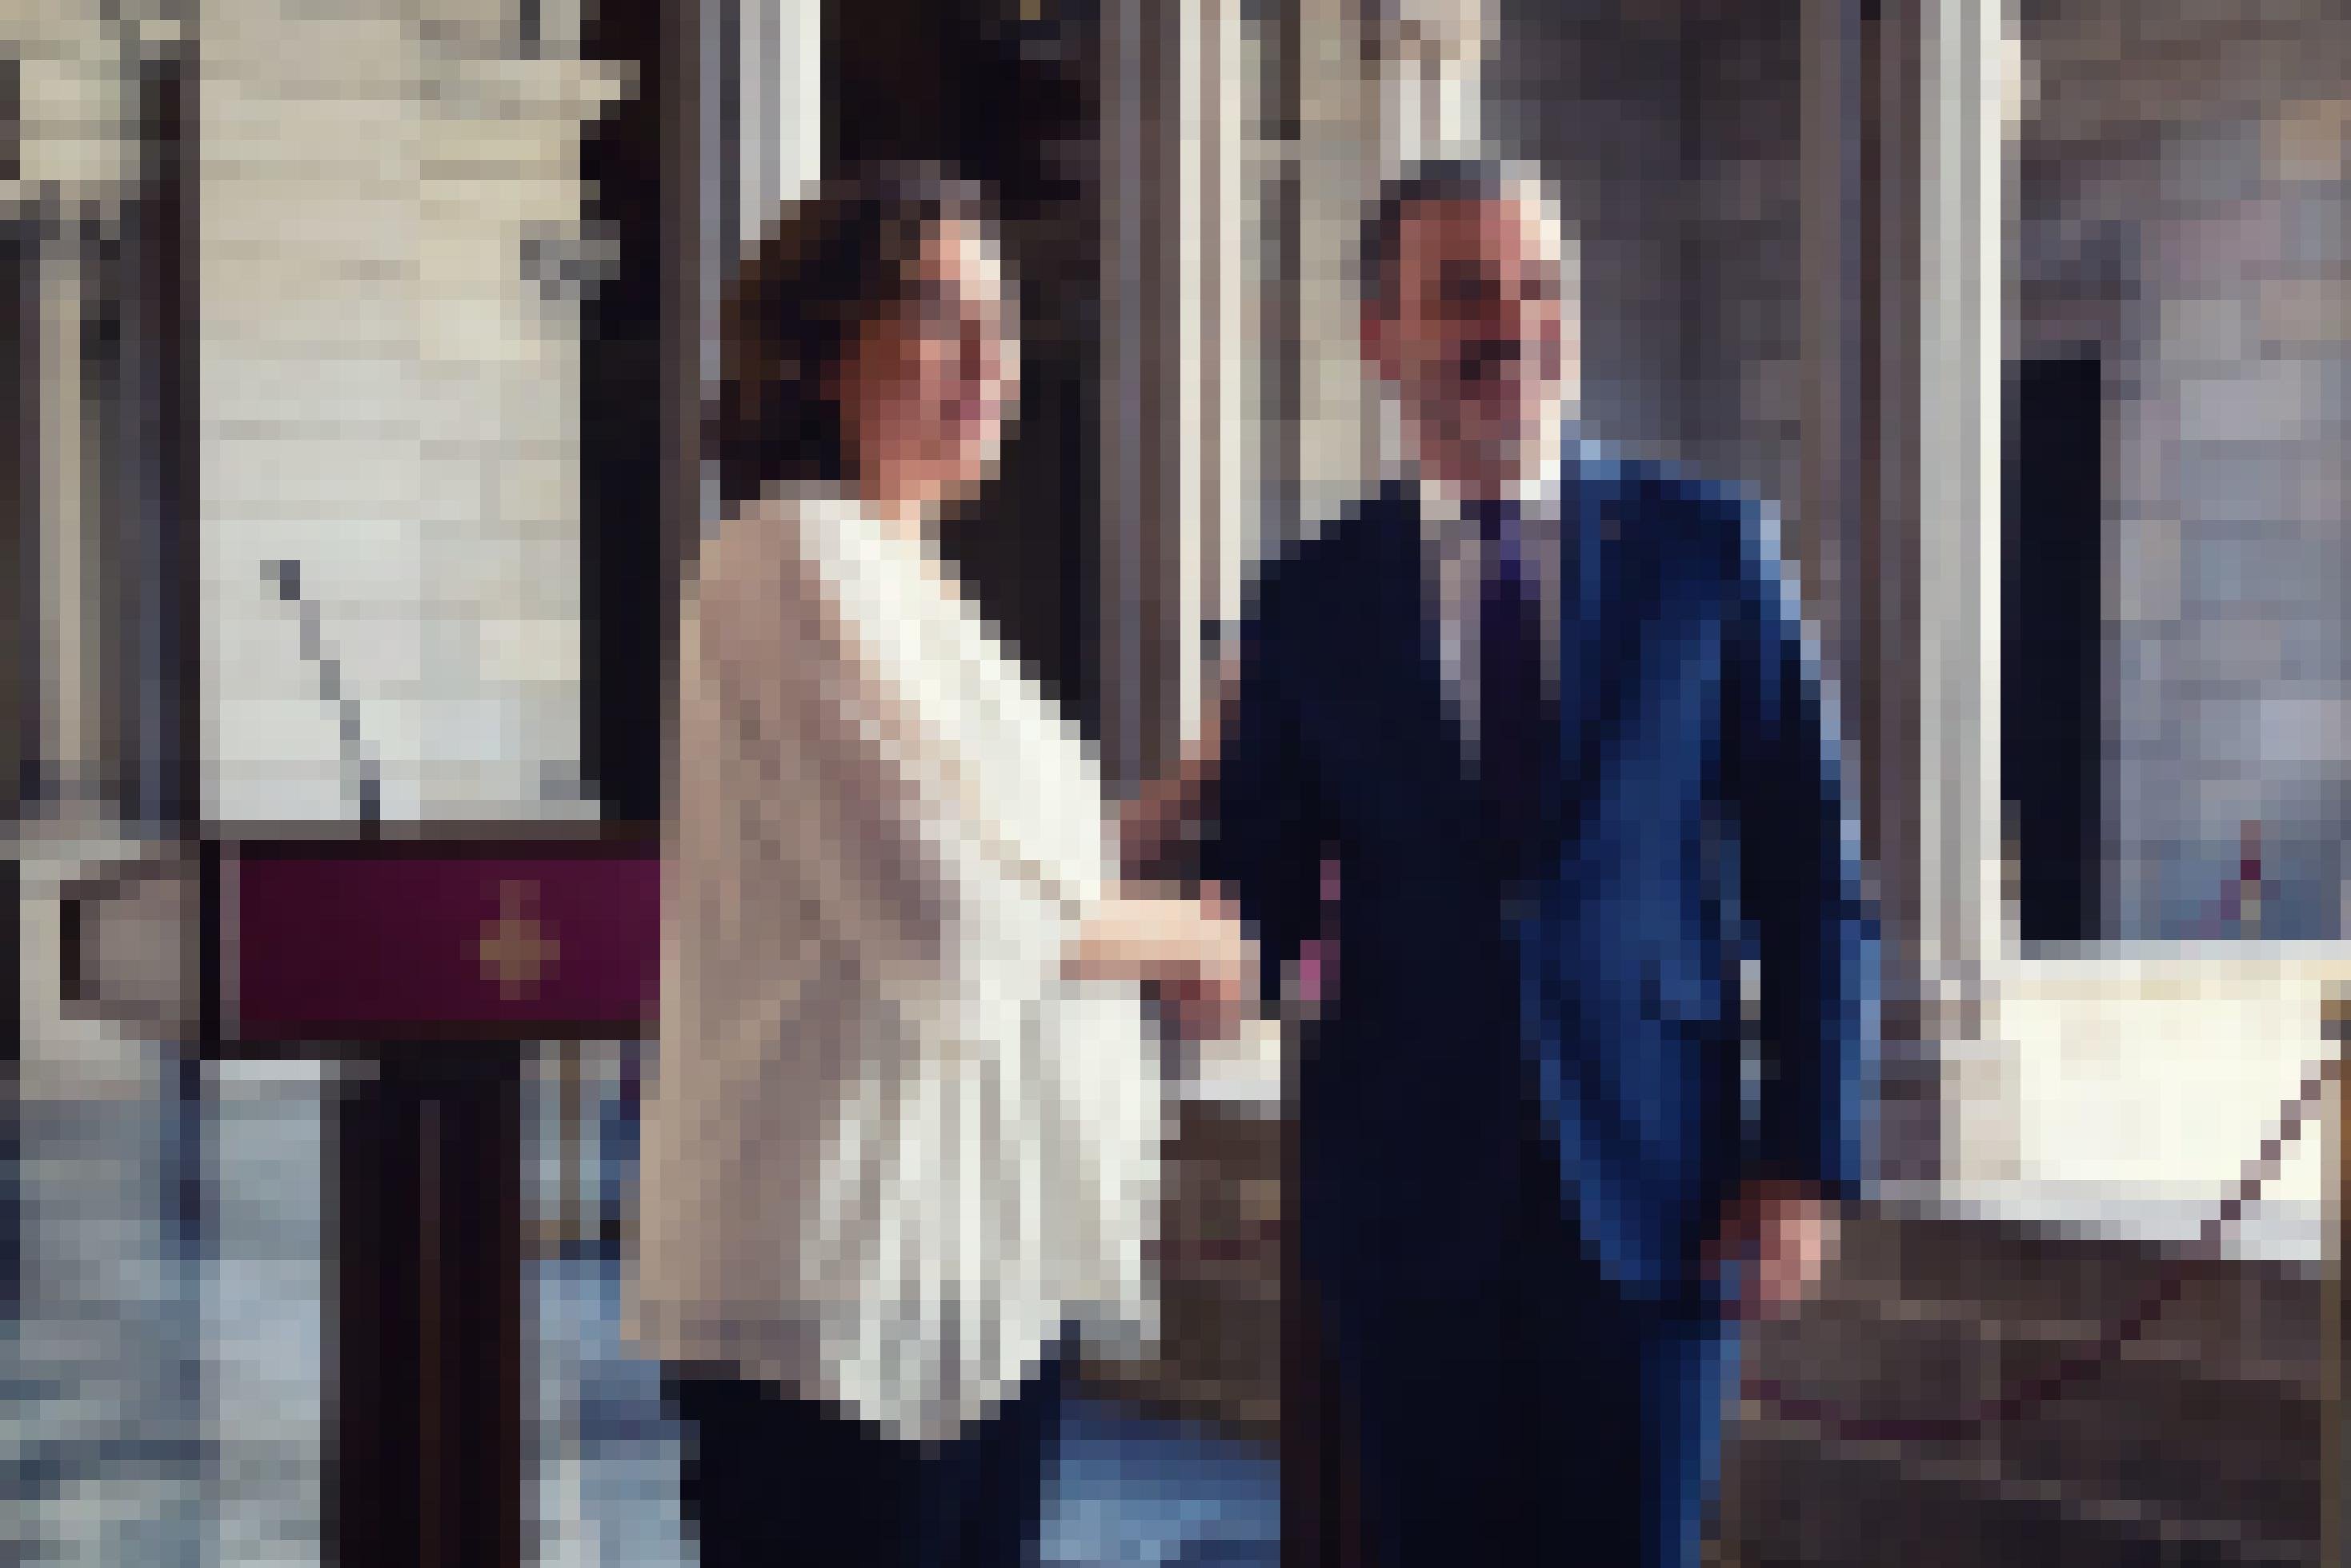 Im gotischen Rathaus von Barcelona reichen sich Ada Colau und Jaume Collboni die Hand. Sie signieren so 2019  einen gemeinsamen Regierungspakt.